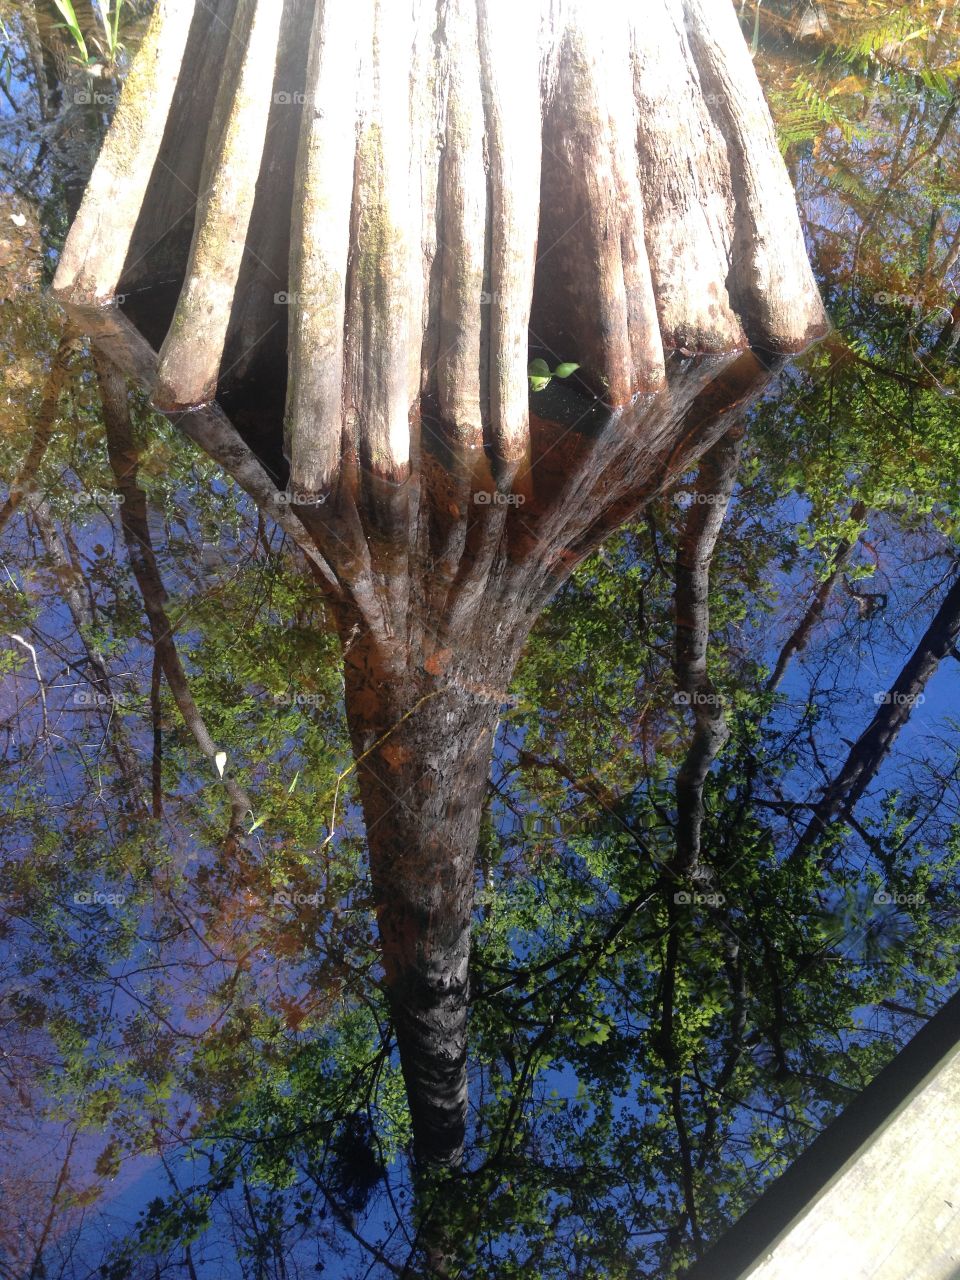 Tree trunk in reverse